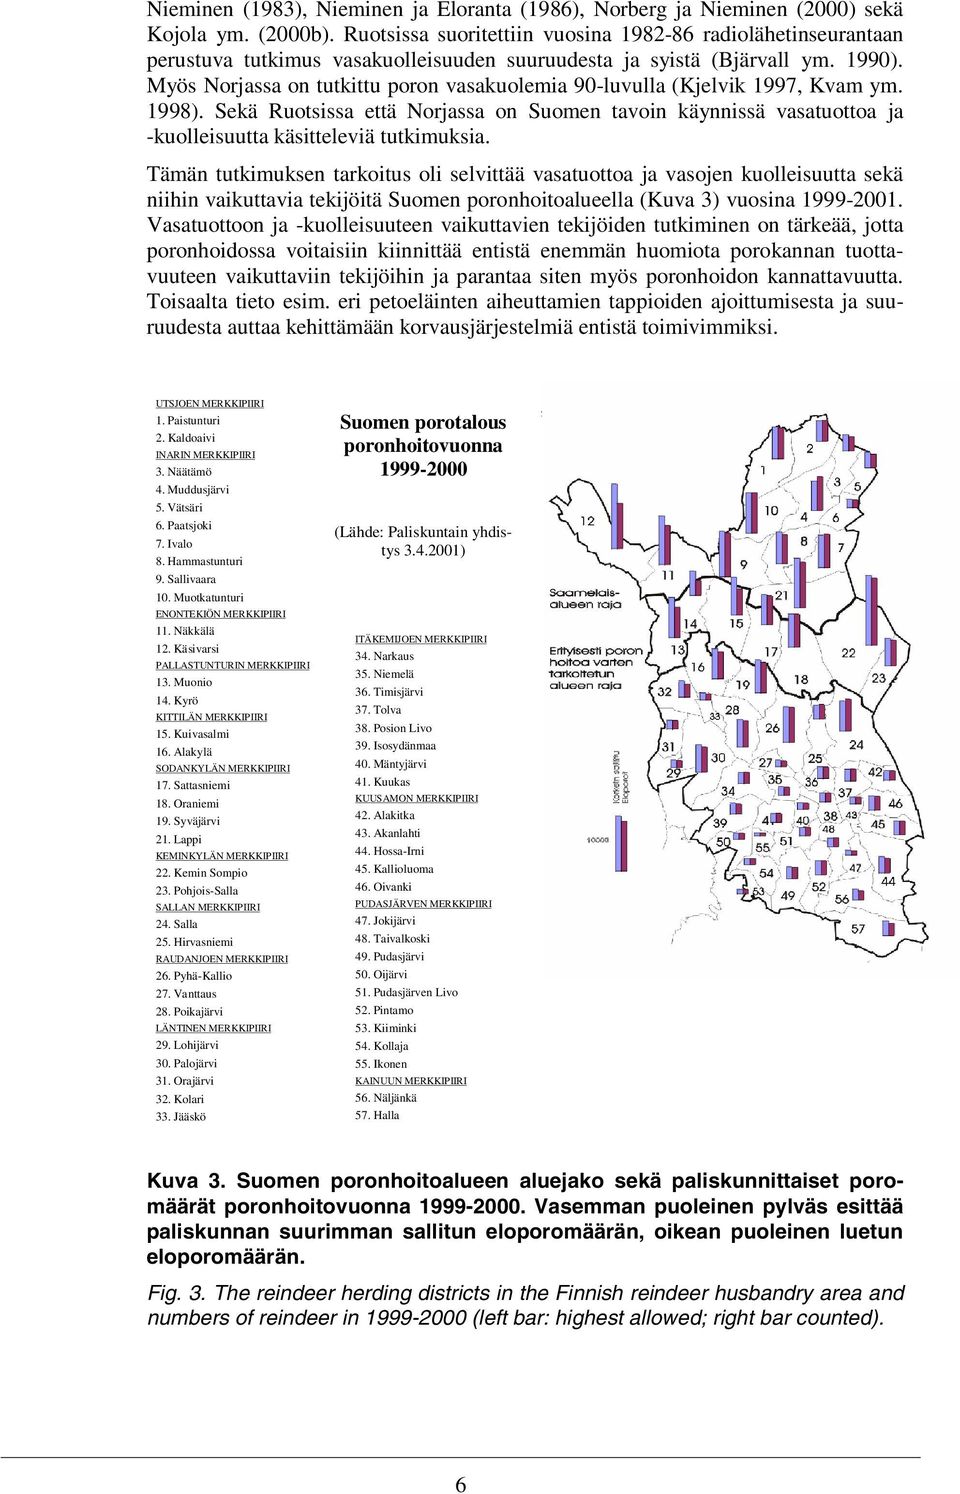 Myös Norjassa on tutkittu poron vasakuolemia 90-luvulla (Kjelvik 1997, Kvam ym. 1998). Sekä Ruotsissa että Norjassa on Suomen tavoin käynnissä vasatuottoa ja -kuolleisuutta käsitteleviä tutkimuksia.